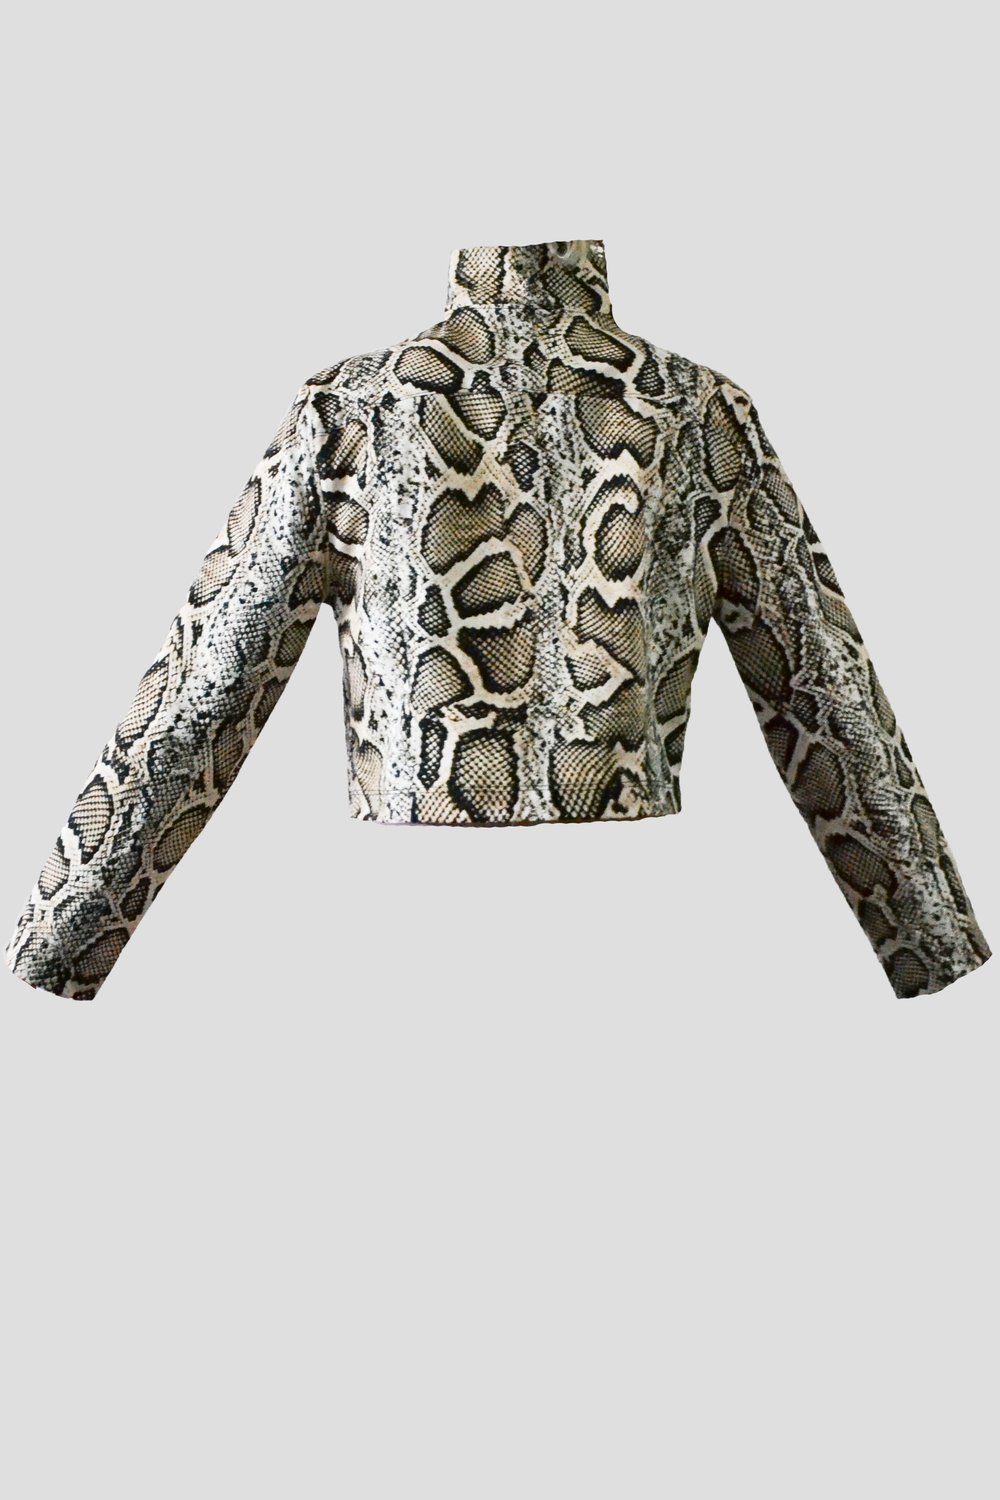 Image of Snake Jacket 